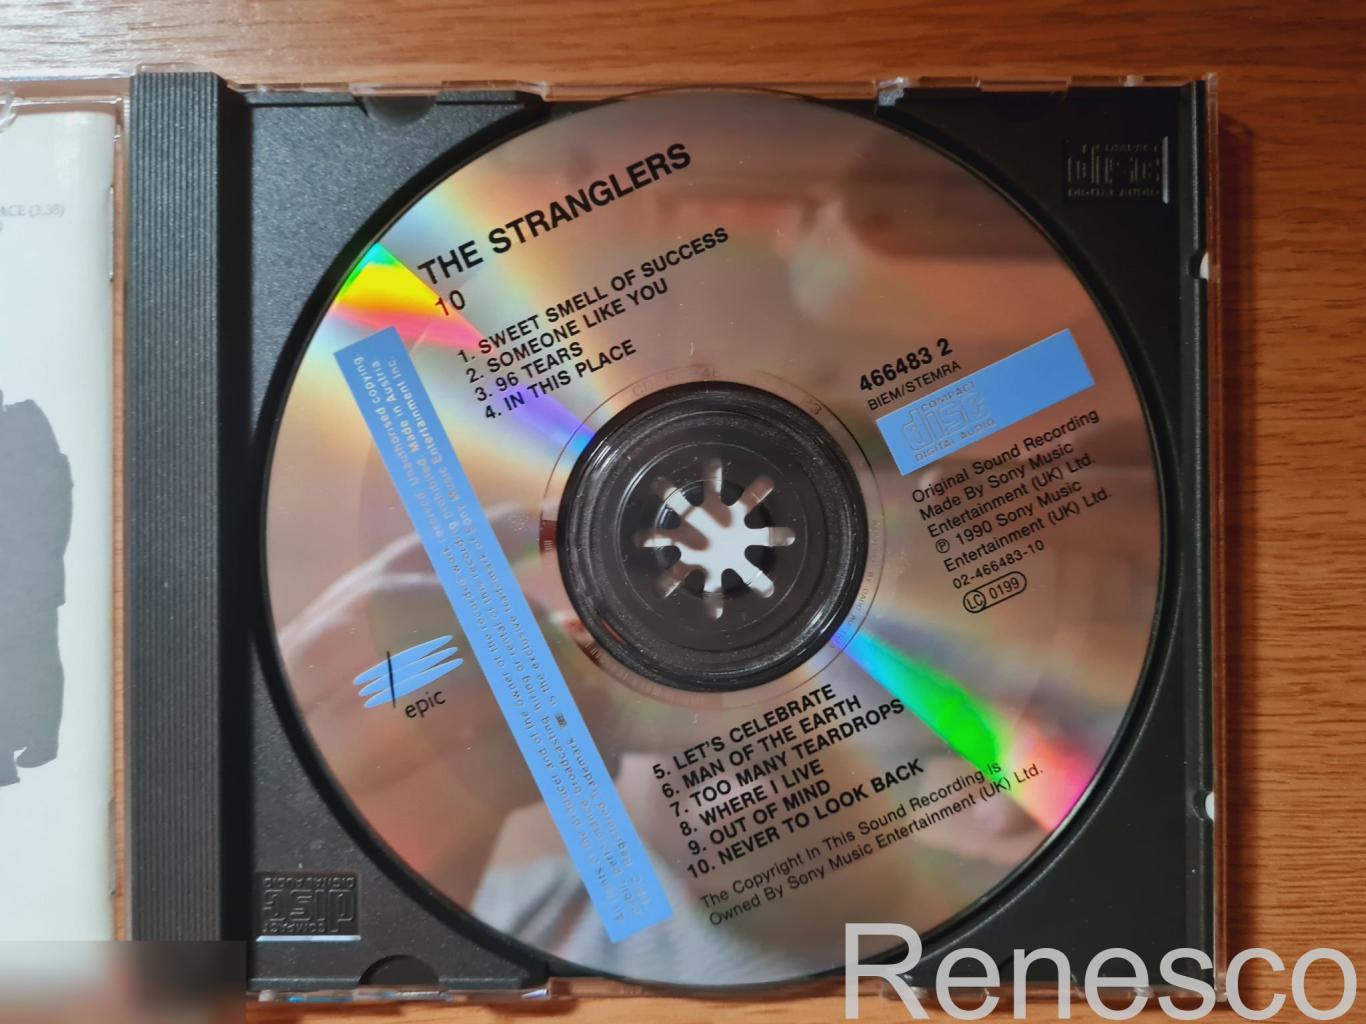 The Stranglers ?– 10 (UK) (1990) 4